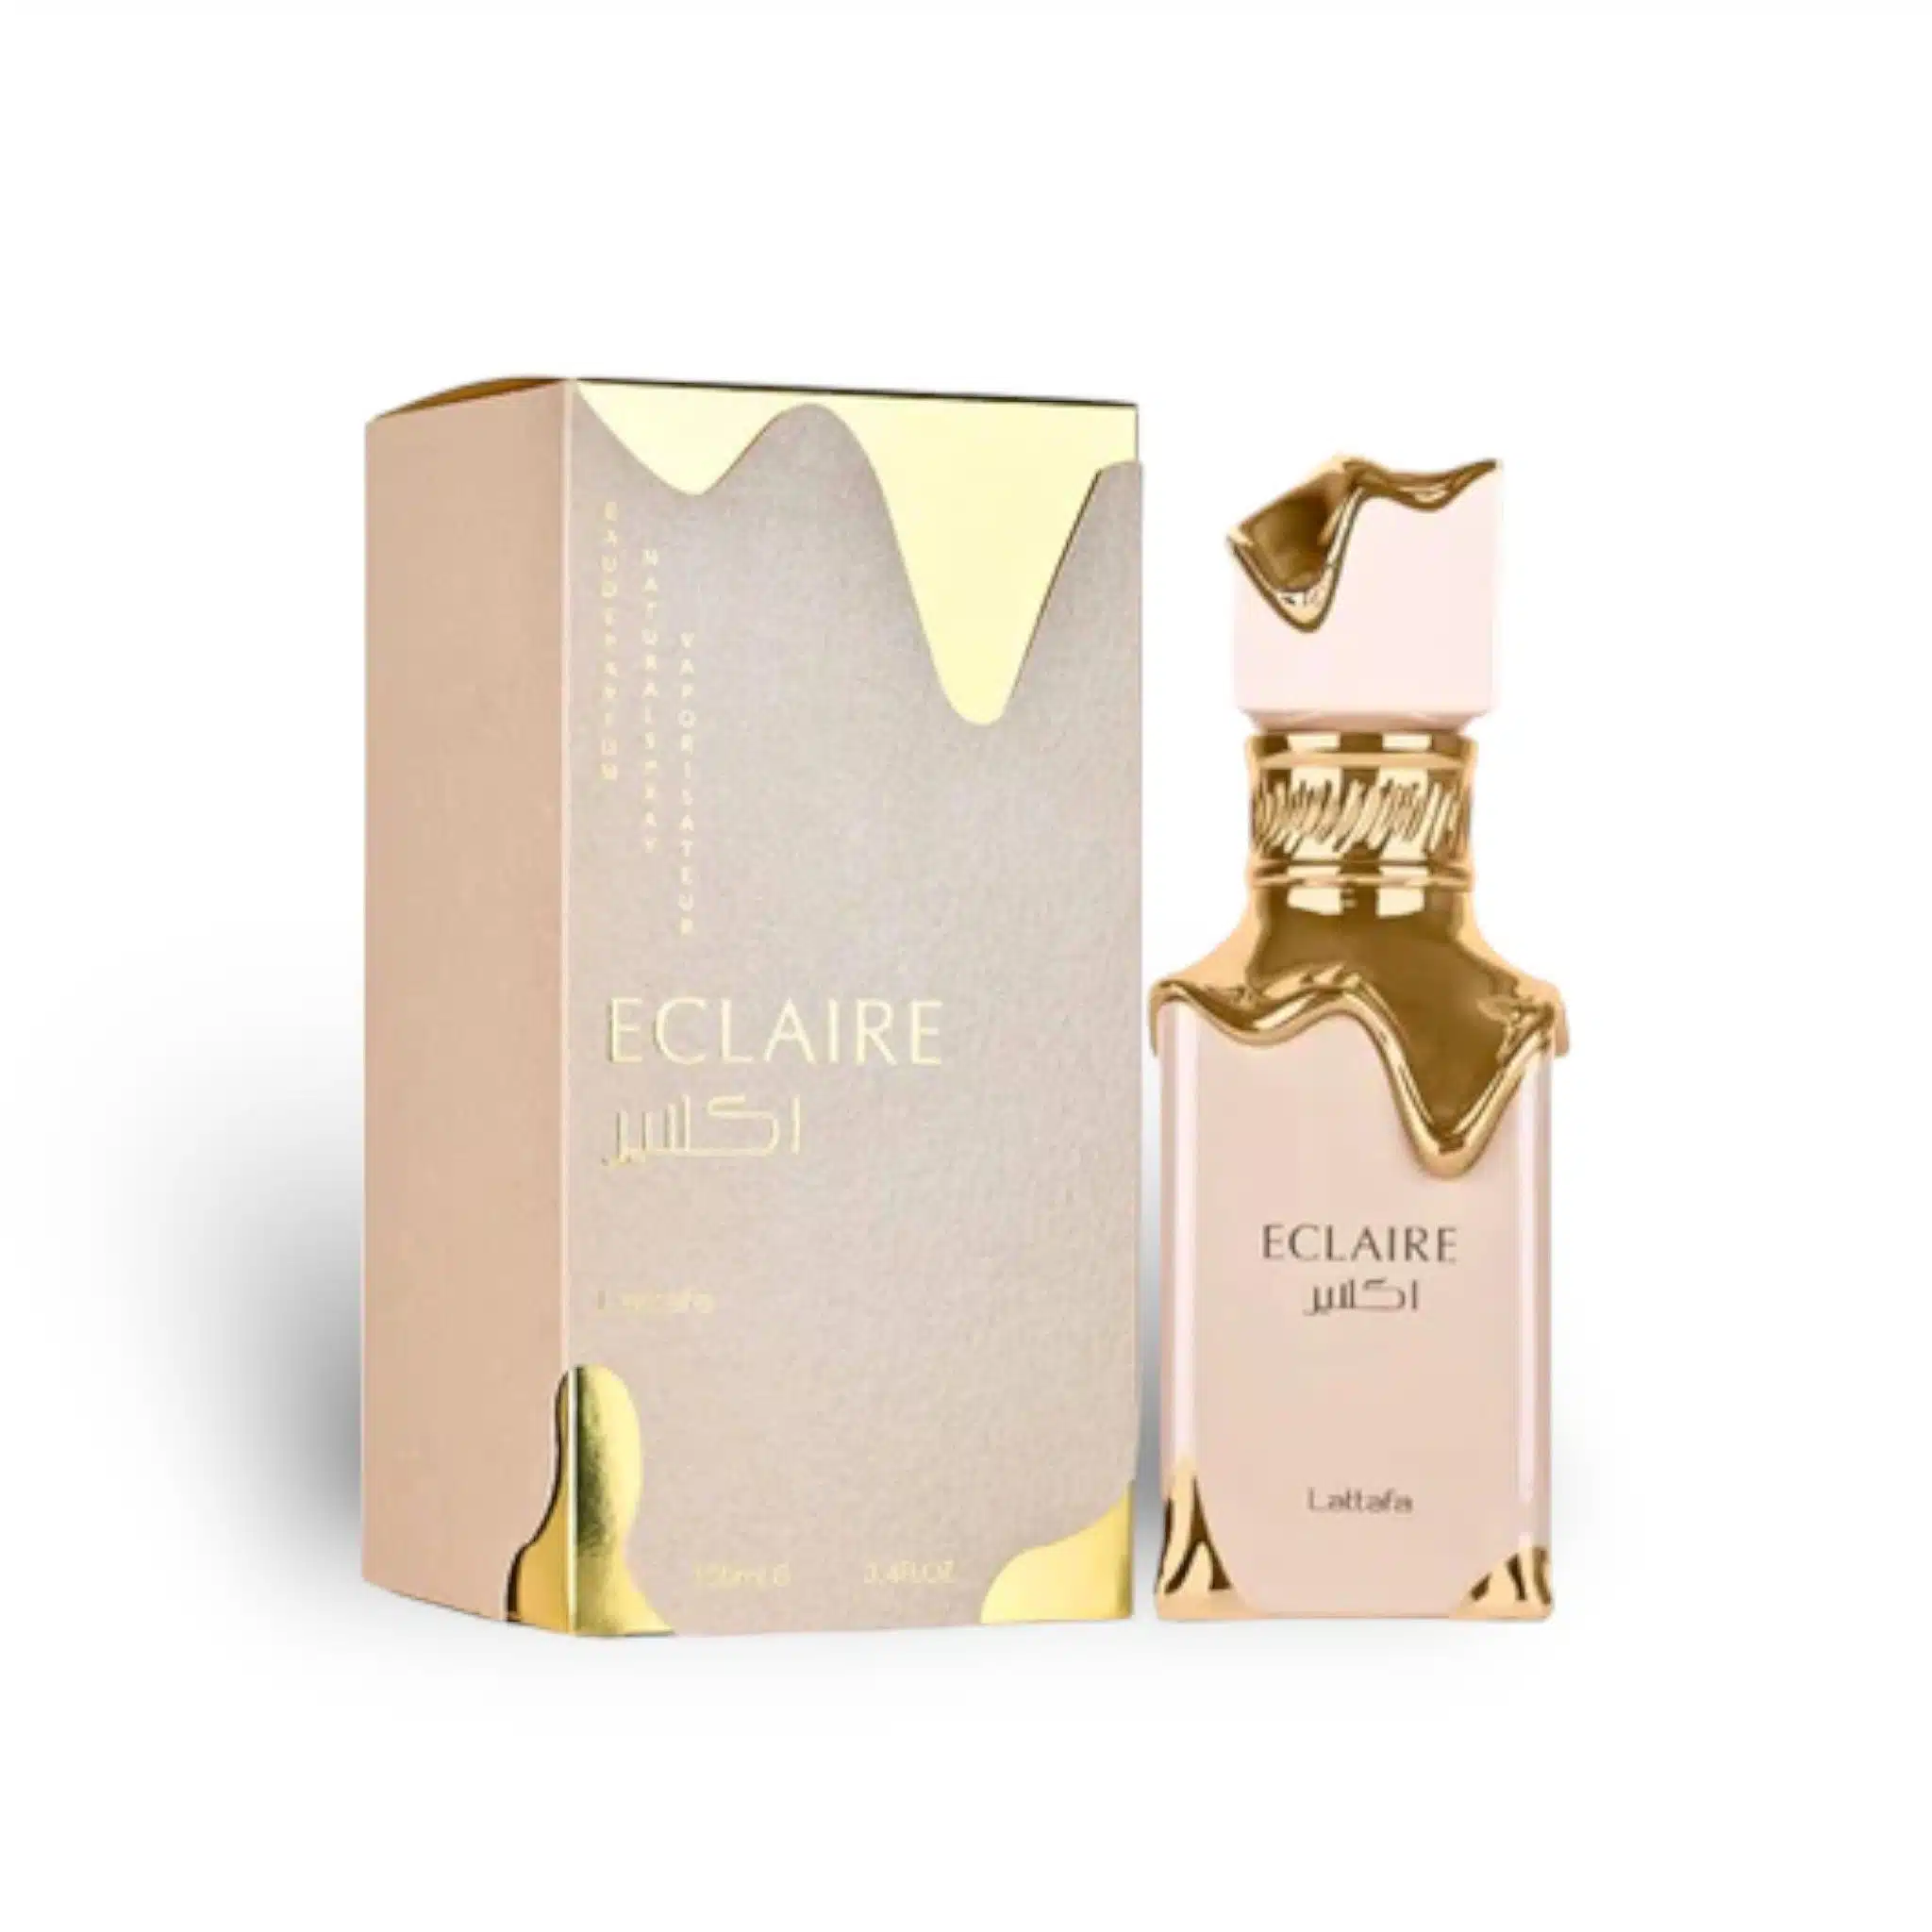 Eclaire Perfume Eau De Parfum 100Ml By Lattafa